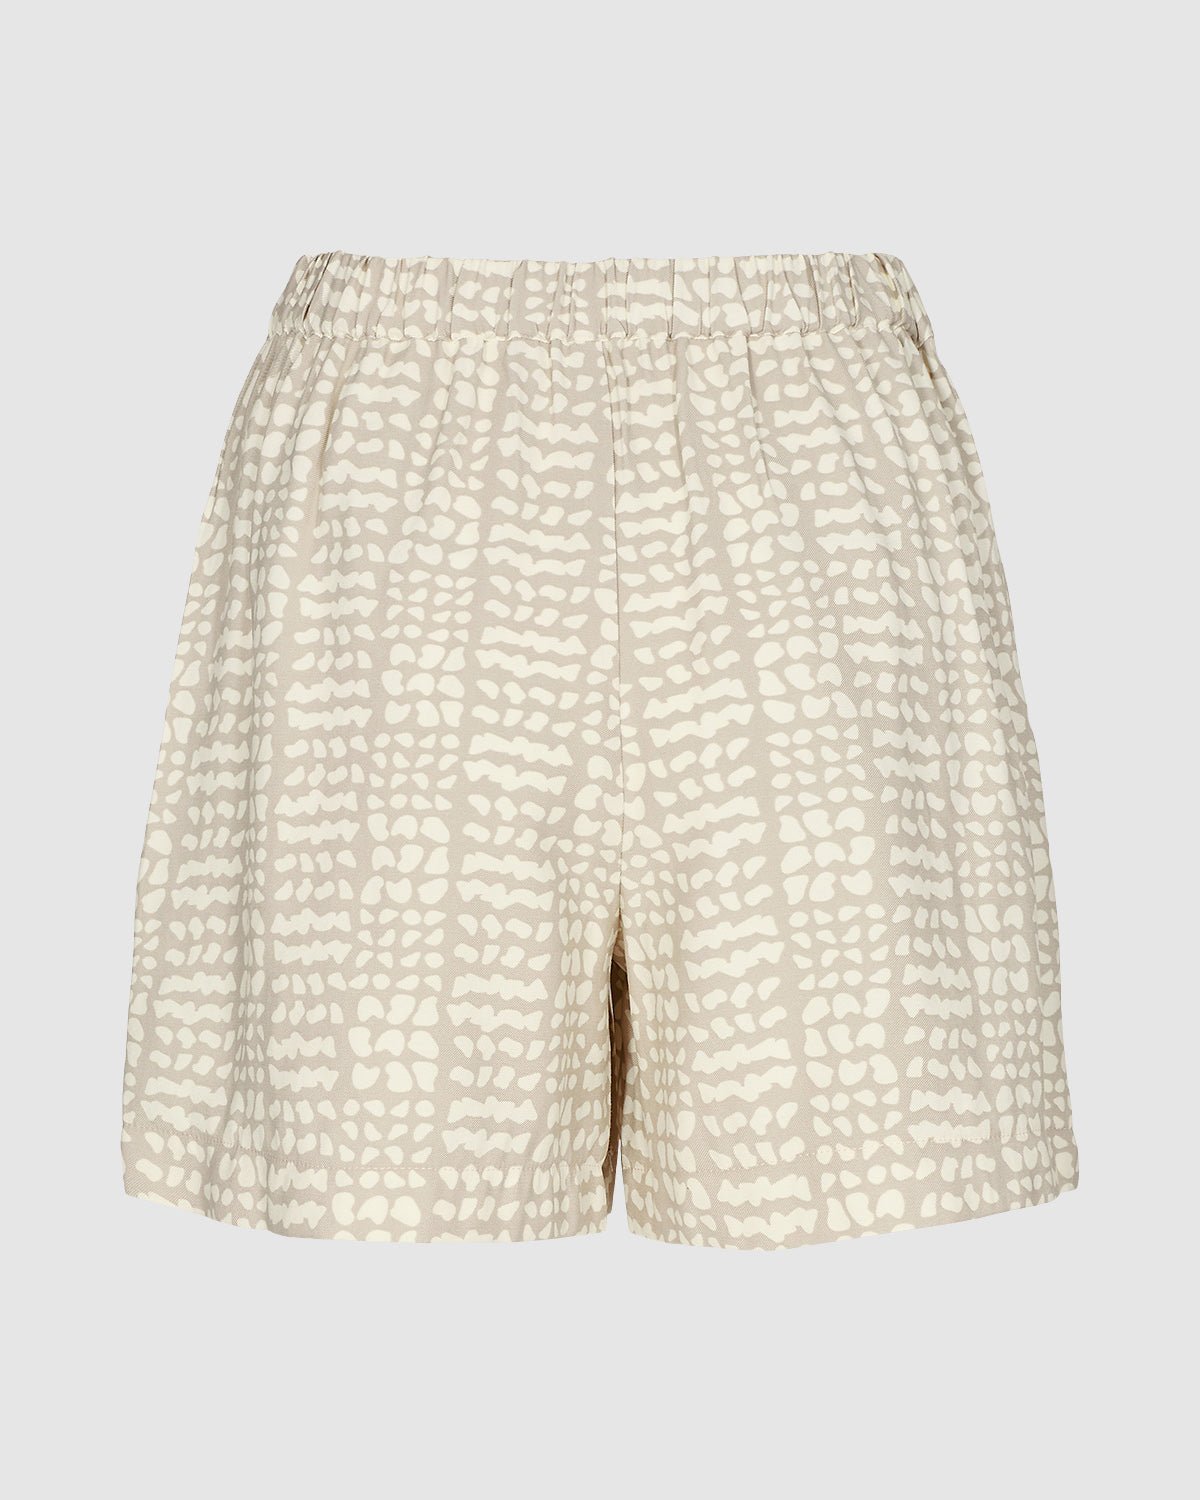 MINIMUM - Locoa shorts 9735 - Boutique Bubbles